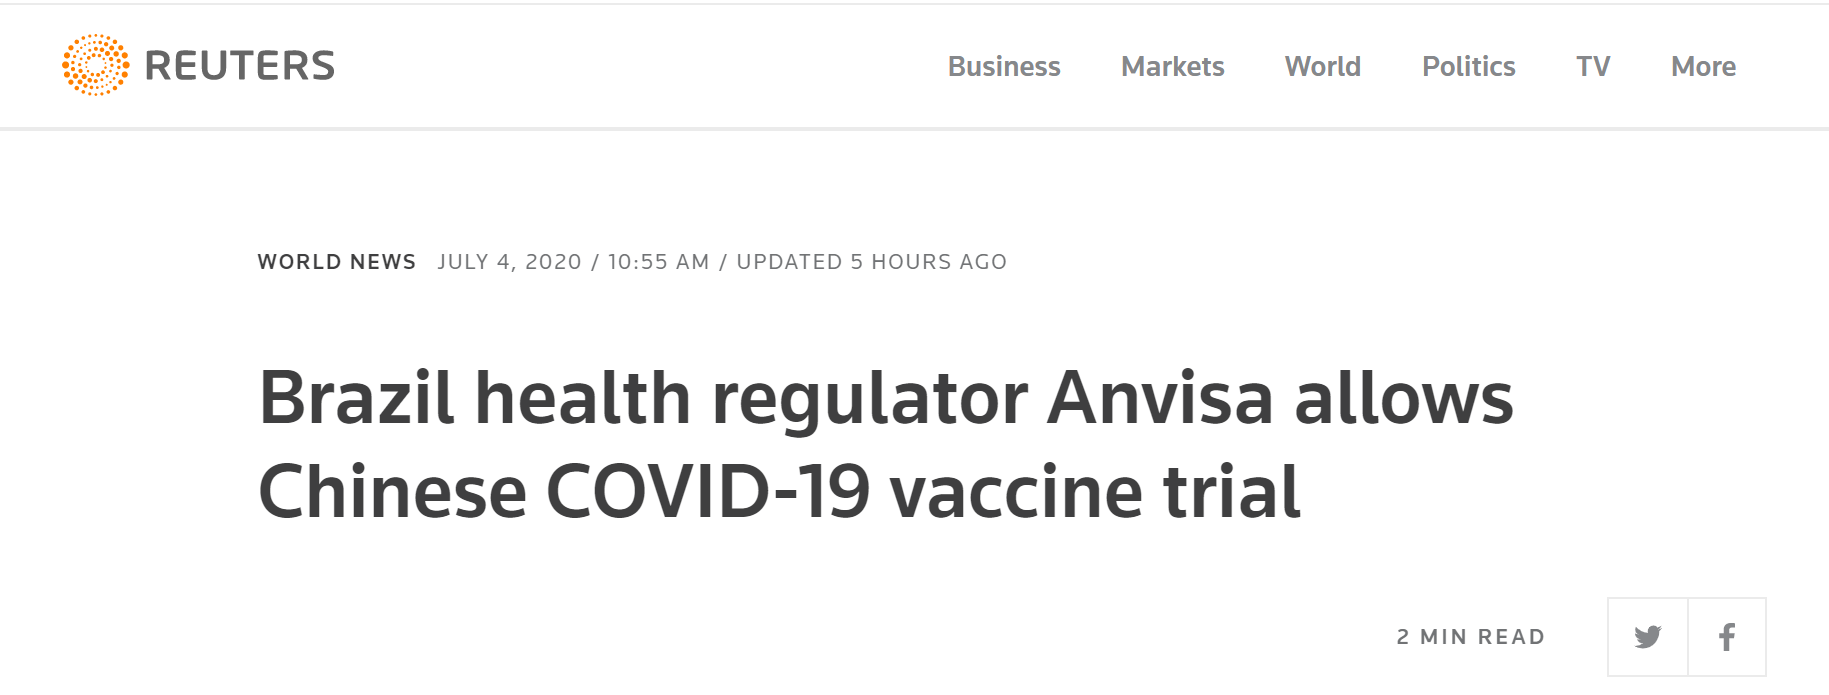 路透社：巴西卫生监管机构国家卫生监督局（ANVISA）批准中国研发的新冠肺炎疫苗进行临床试验